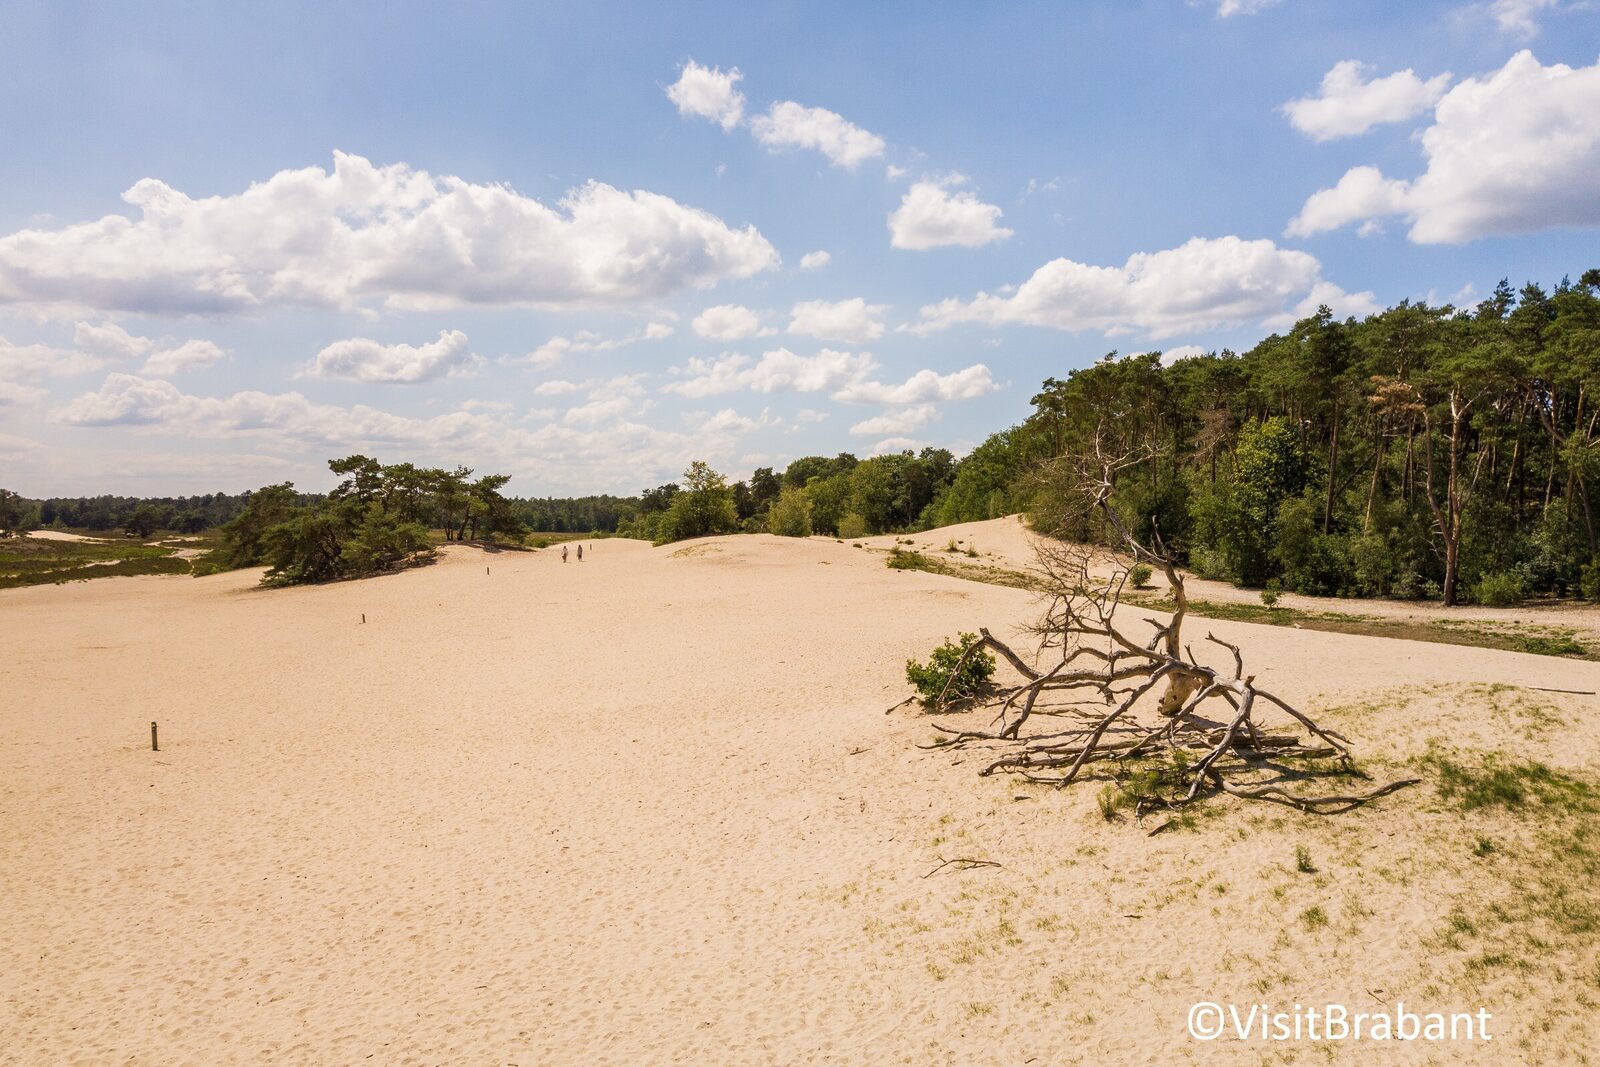 Nationaal Park De Loonse en Drunense Duinen in Brabant